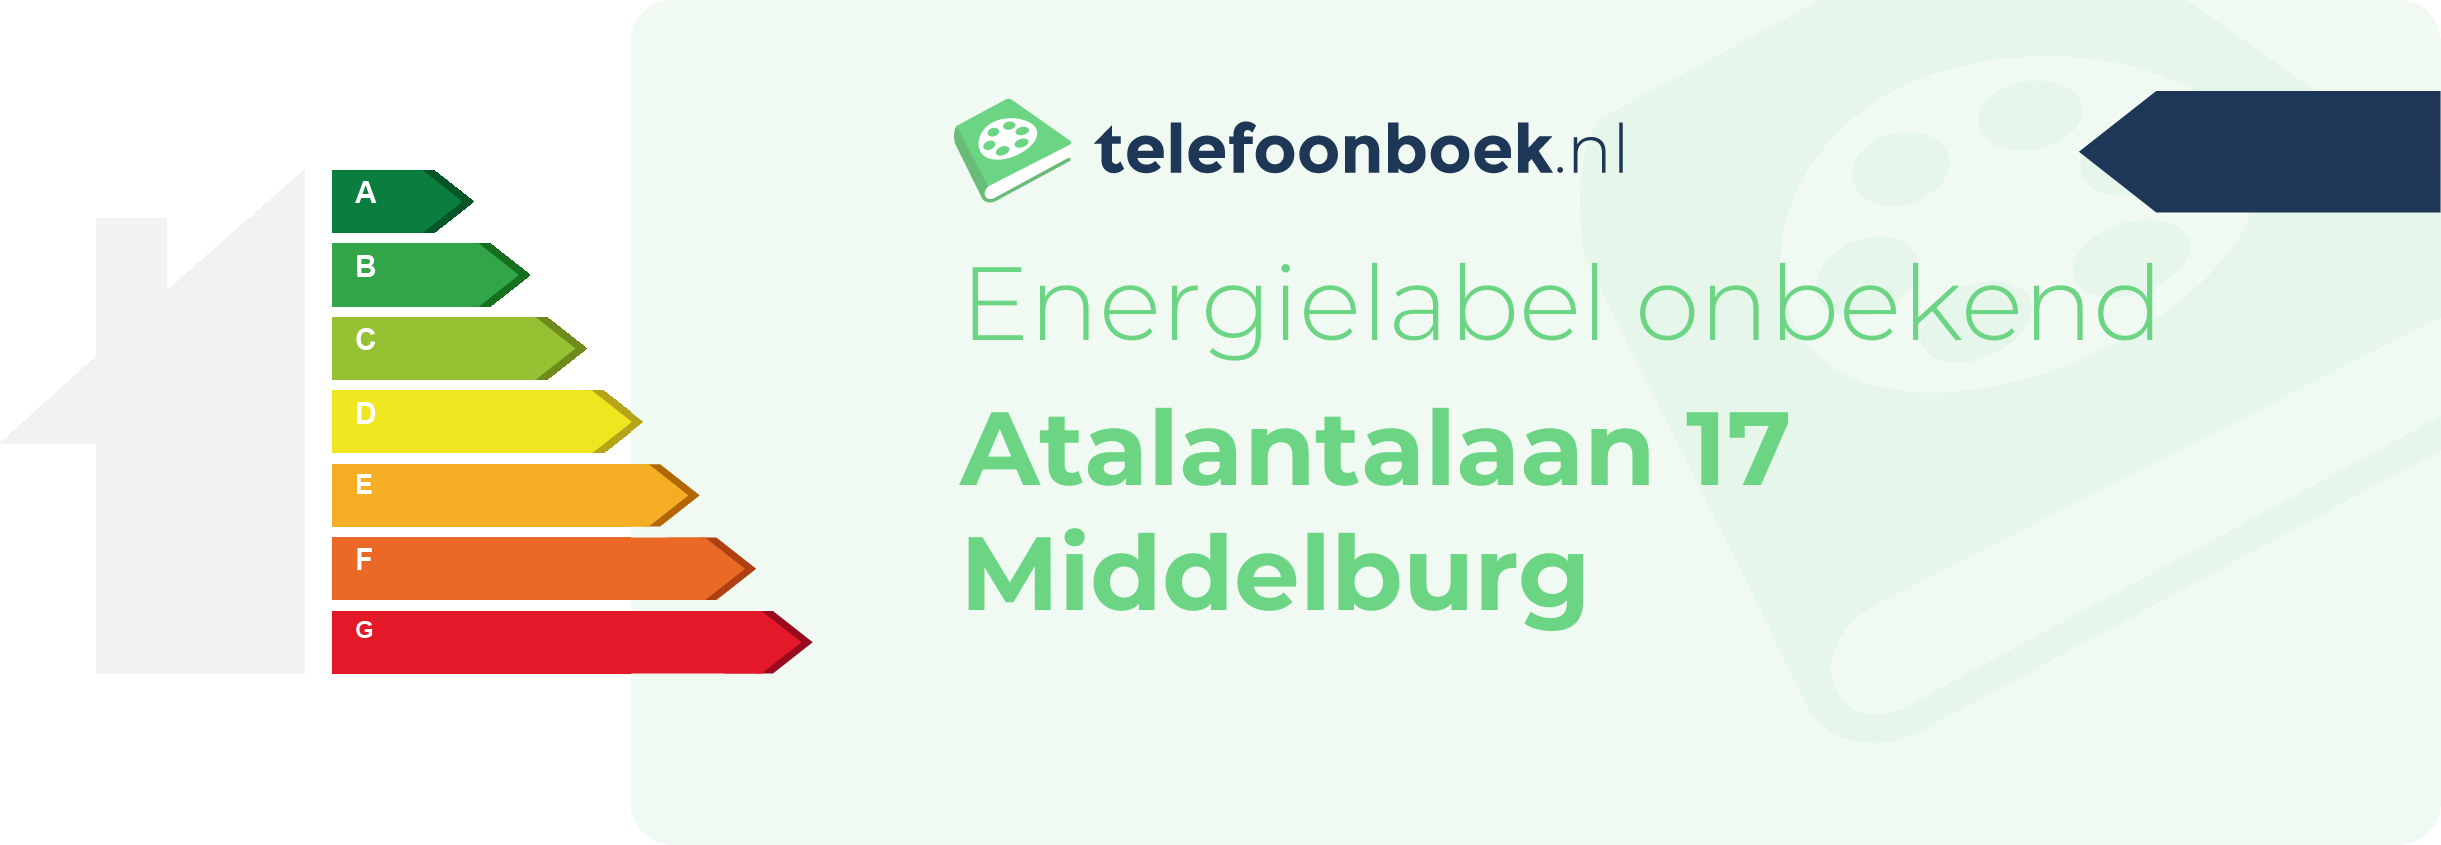 Energielabel Atalantalaan 17 Middelburg